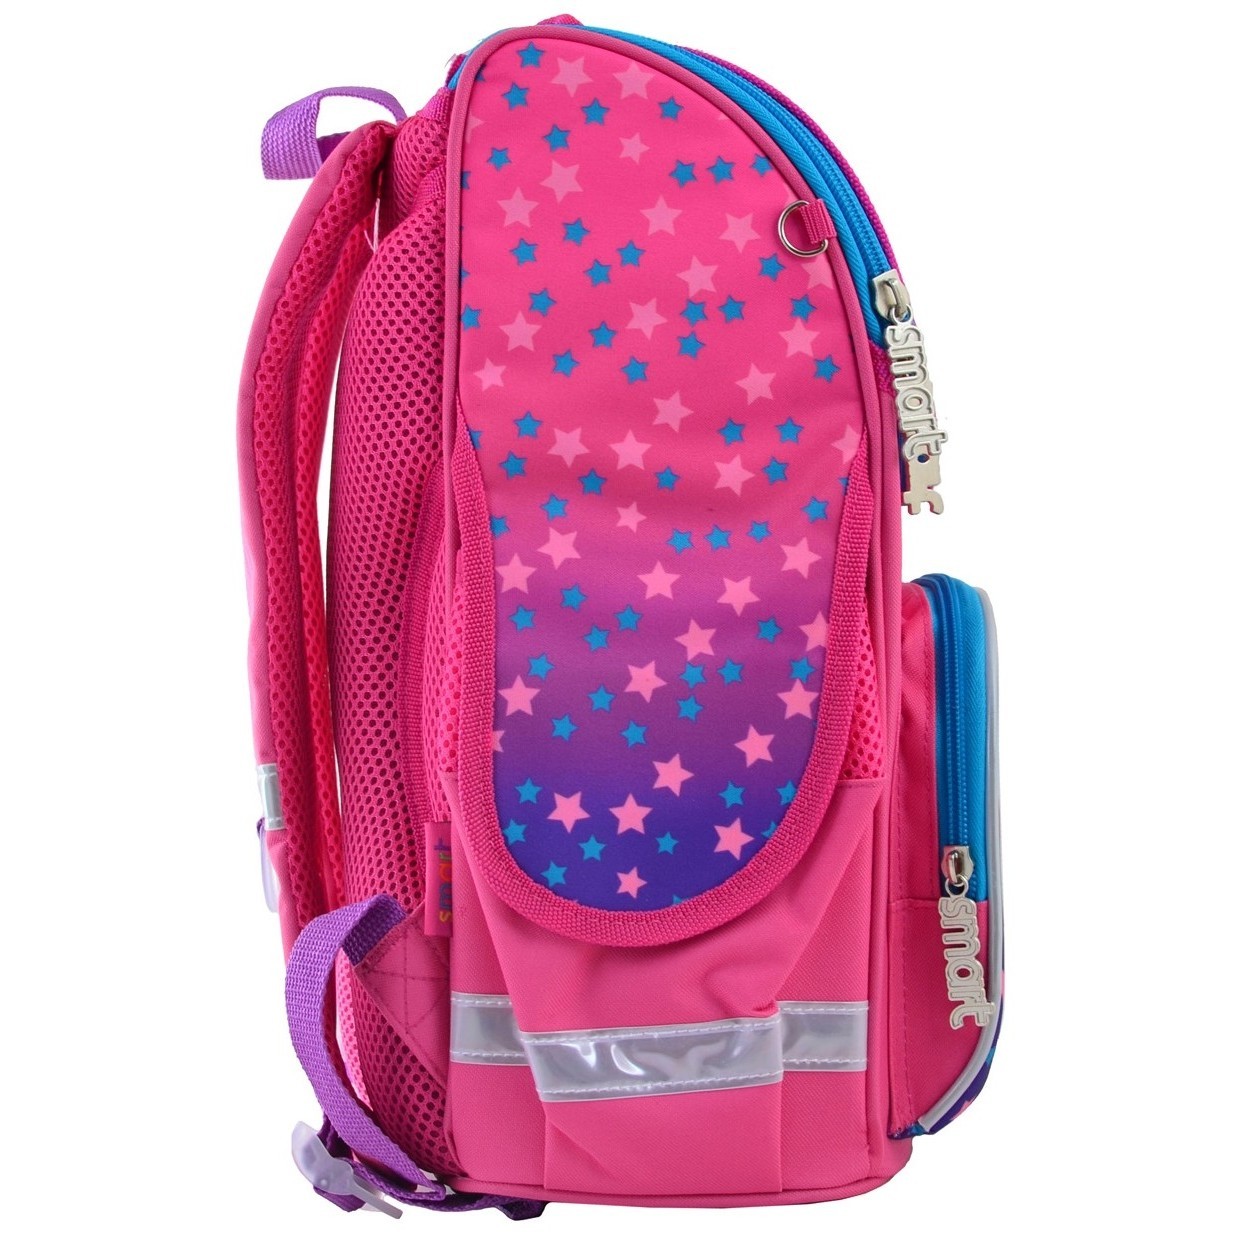 Школьный рюкзак (ранец) Smart PG-11 Unicorn 555902